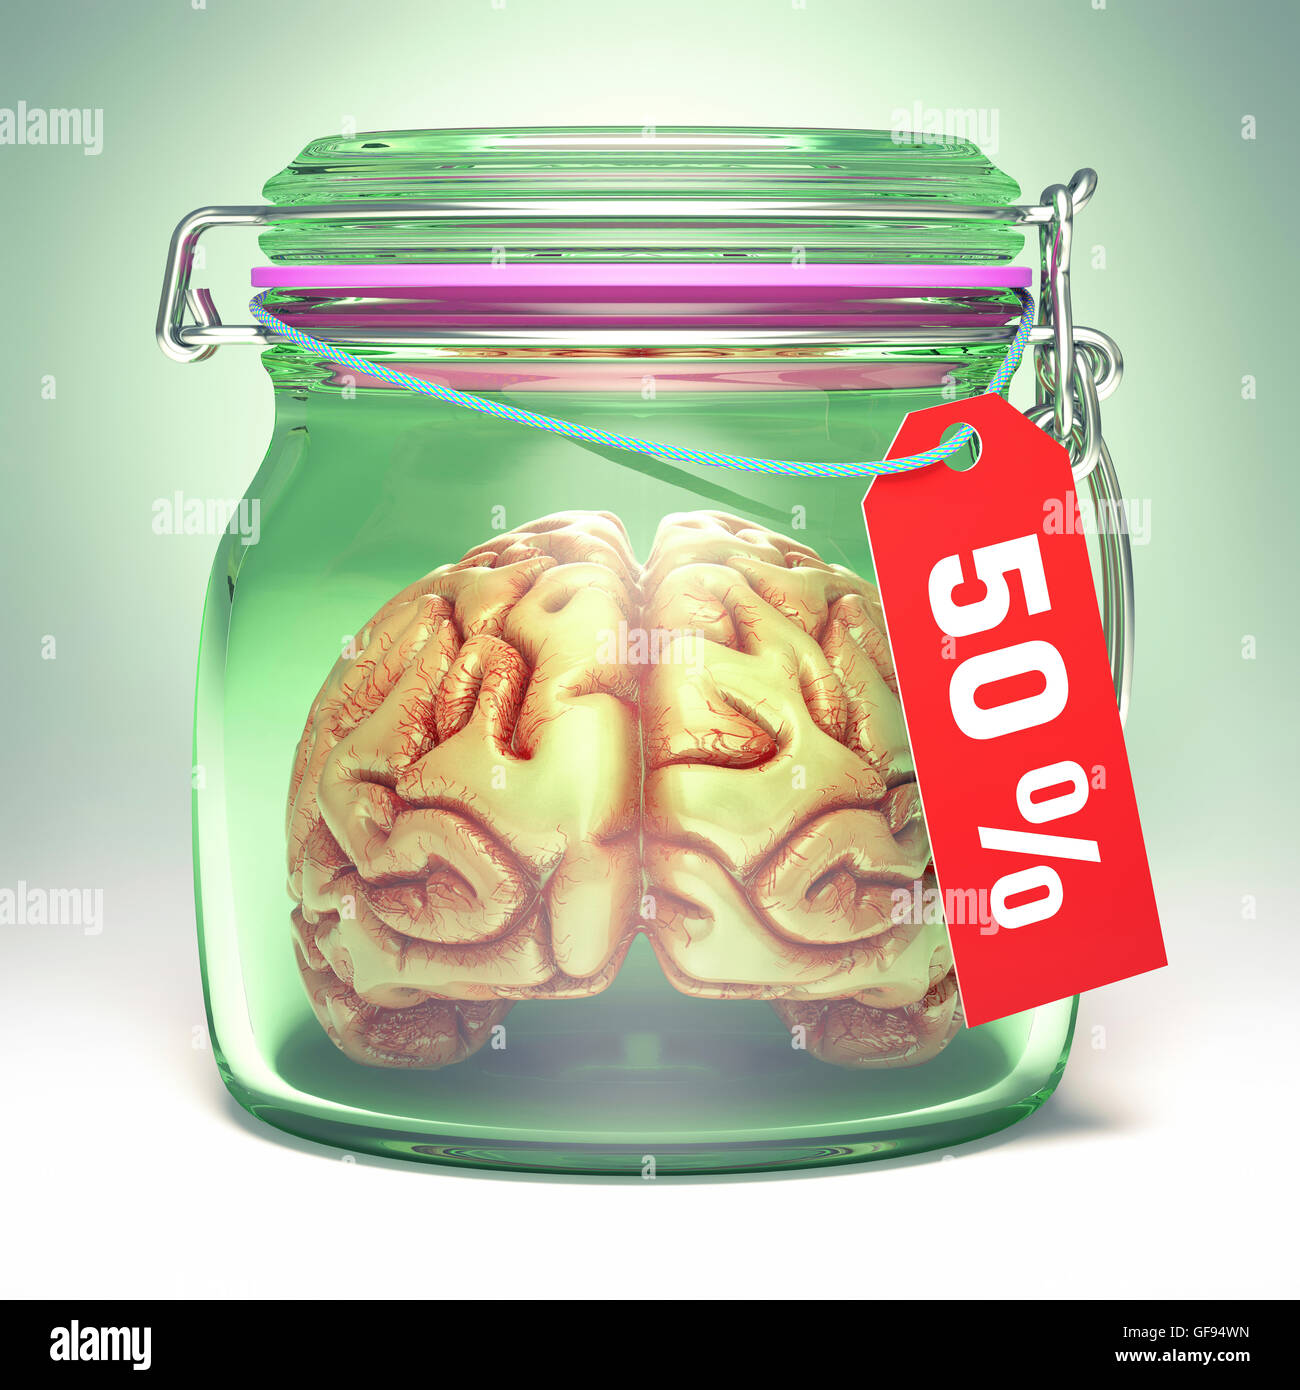 Cerebro Humano en tarro de vidrio con etiqueta de venta, ilustración. Foto de stock